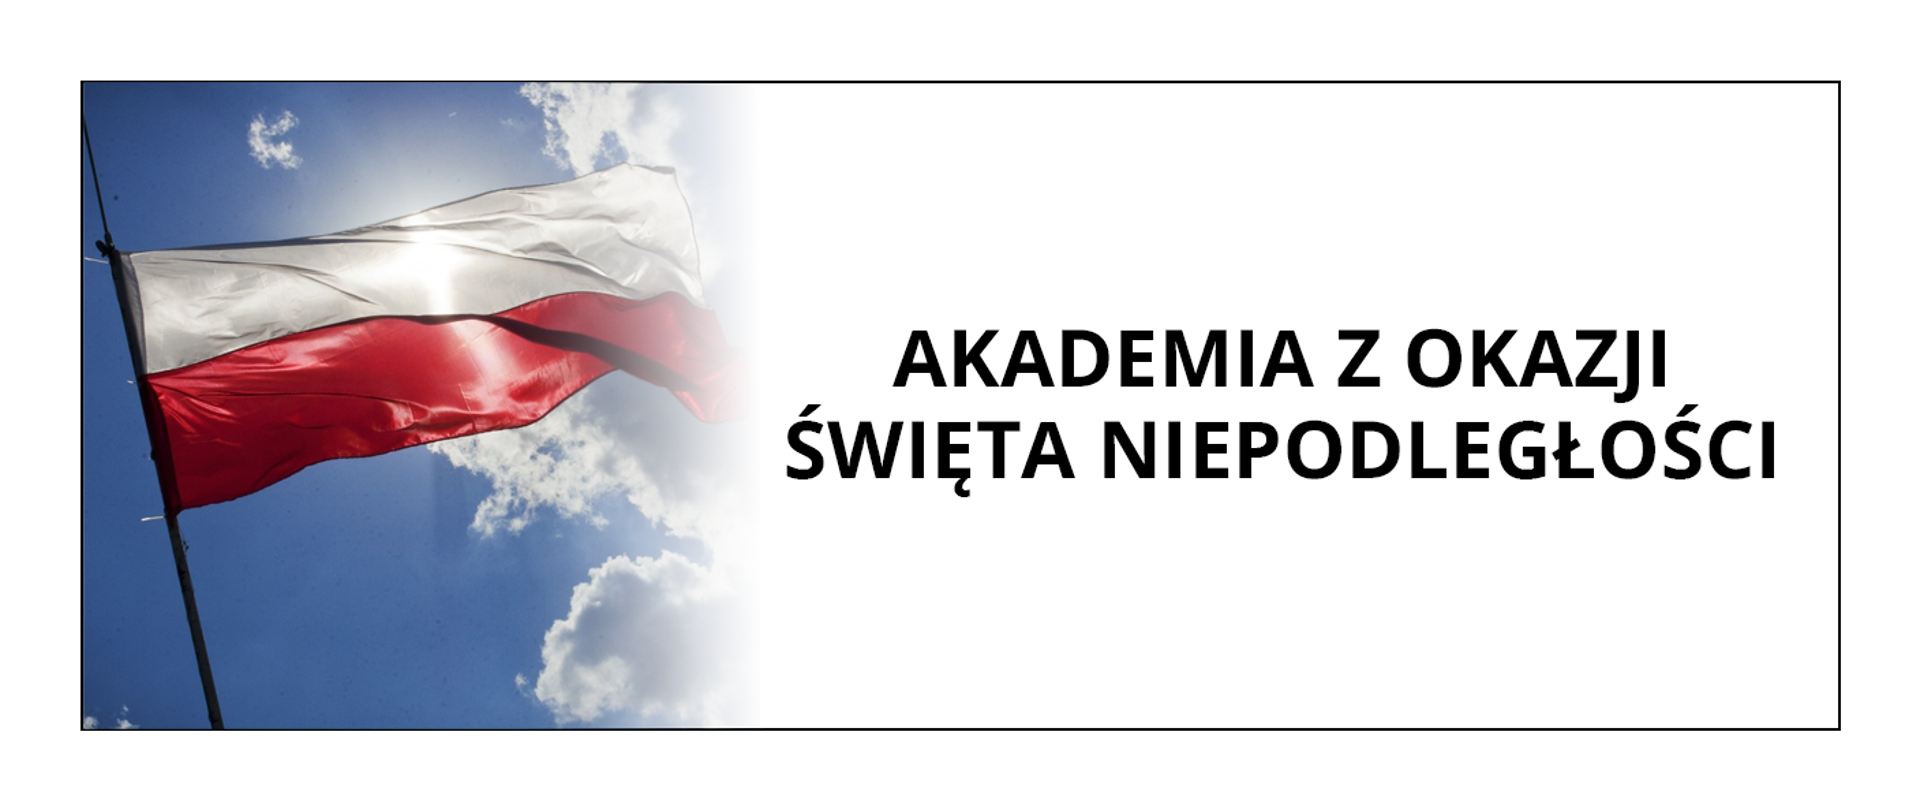 Grafika przedstawia baner z informacją o Akademii z okazji Święta Niepodległości. Po lewej stronie znajduje się zdjęcie biało czerwonej flagi Polski na tle nieba, po prawej stronie czarny napis Akademia z okazji Święta Niepodległości